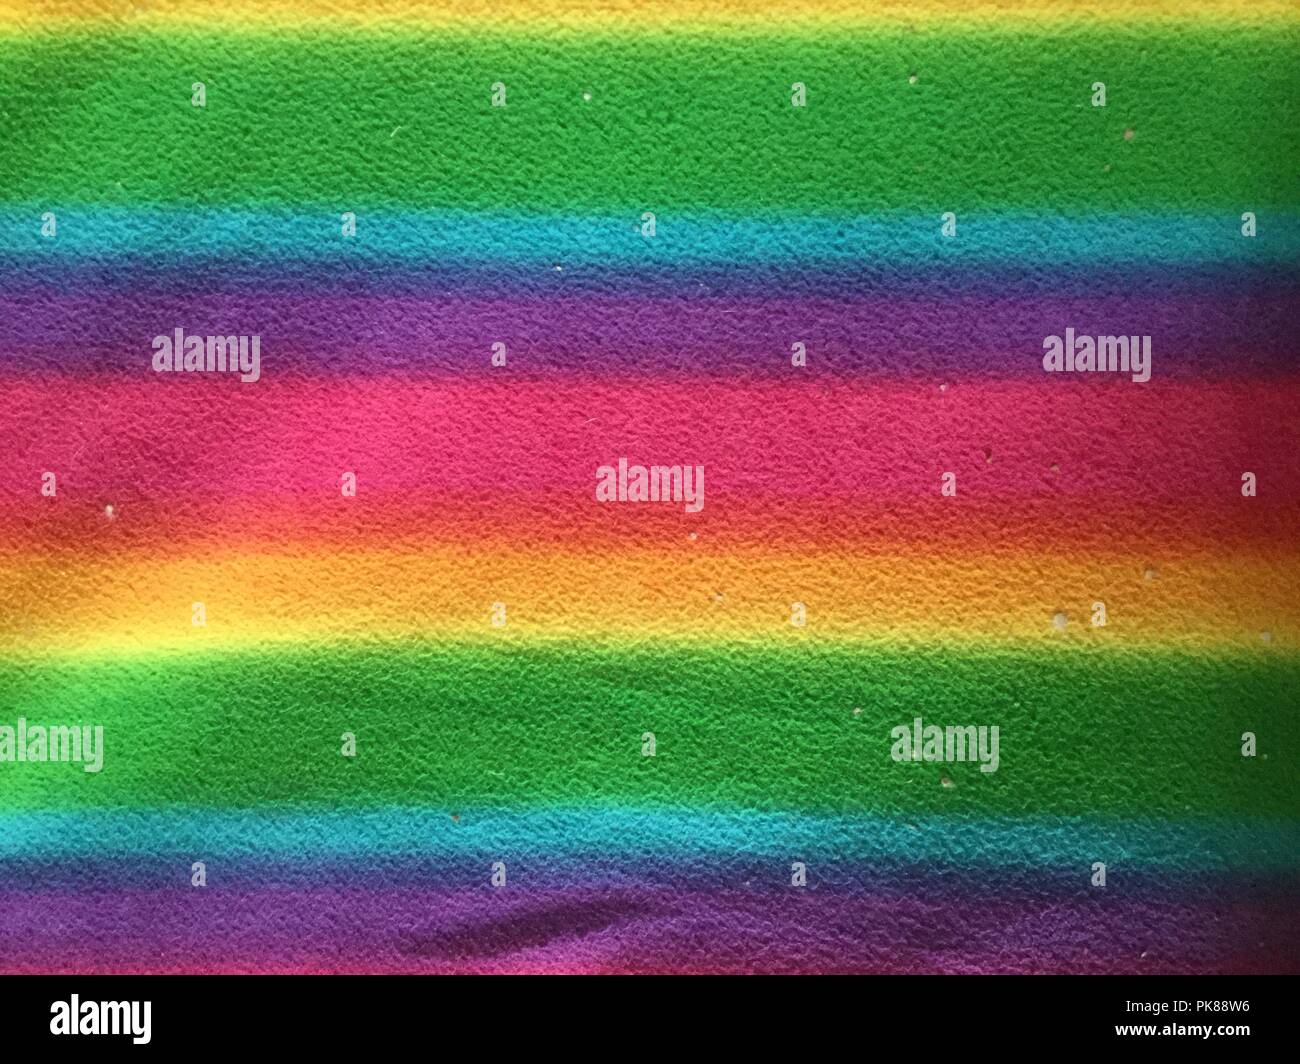 Bunten tuch Oberflächen, Farben Bänder laufen horizontal. Stockfoto